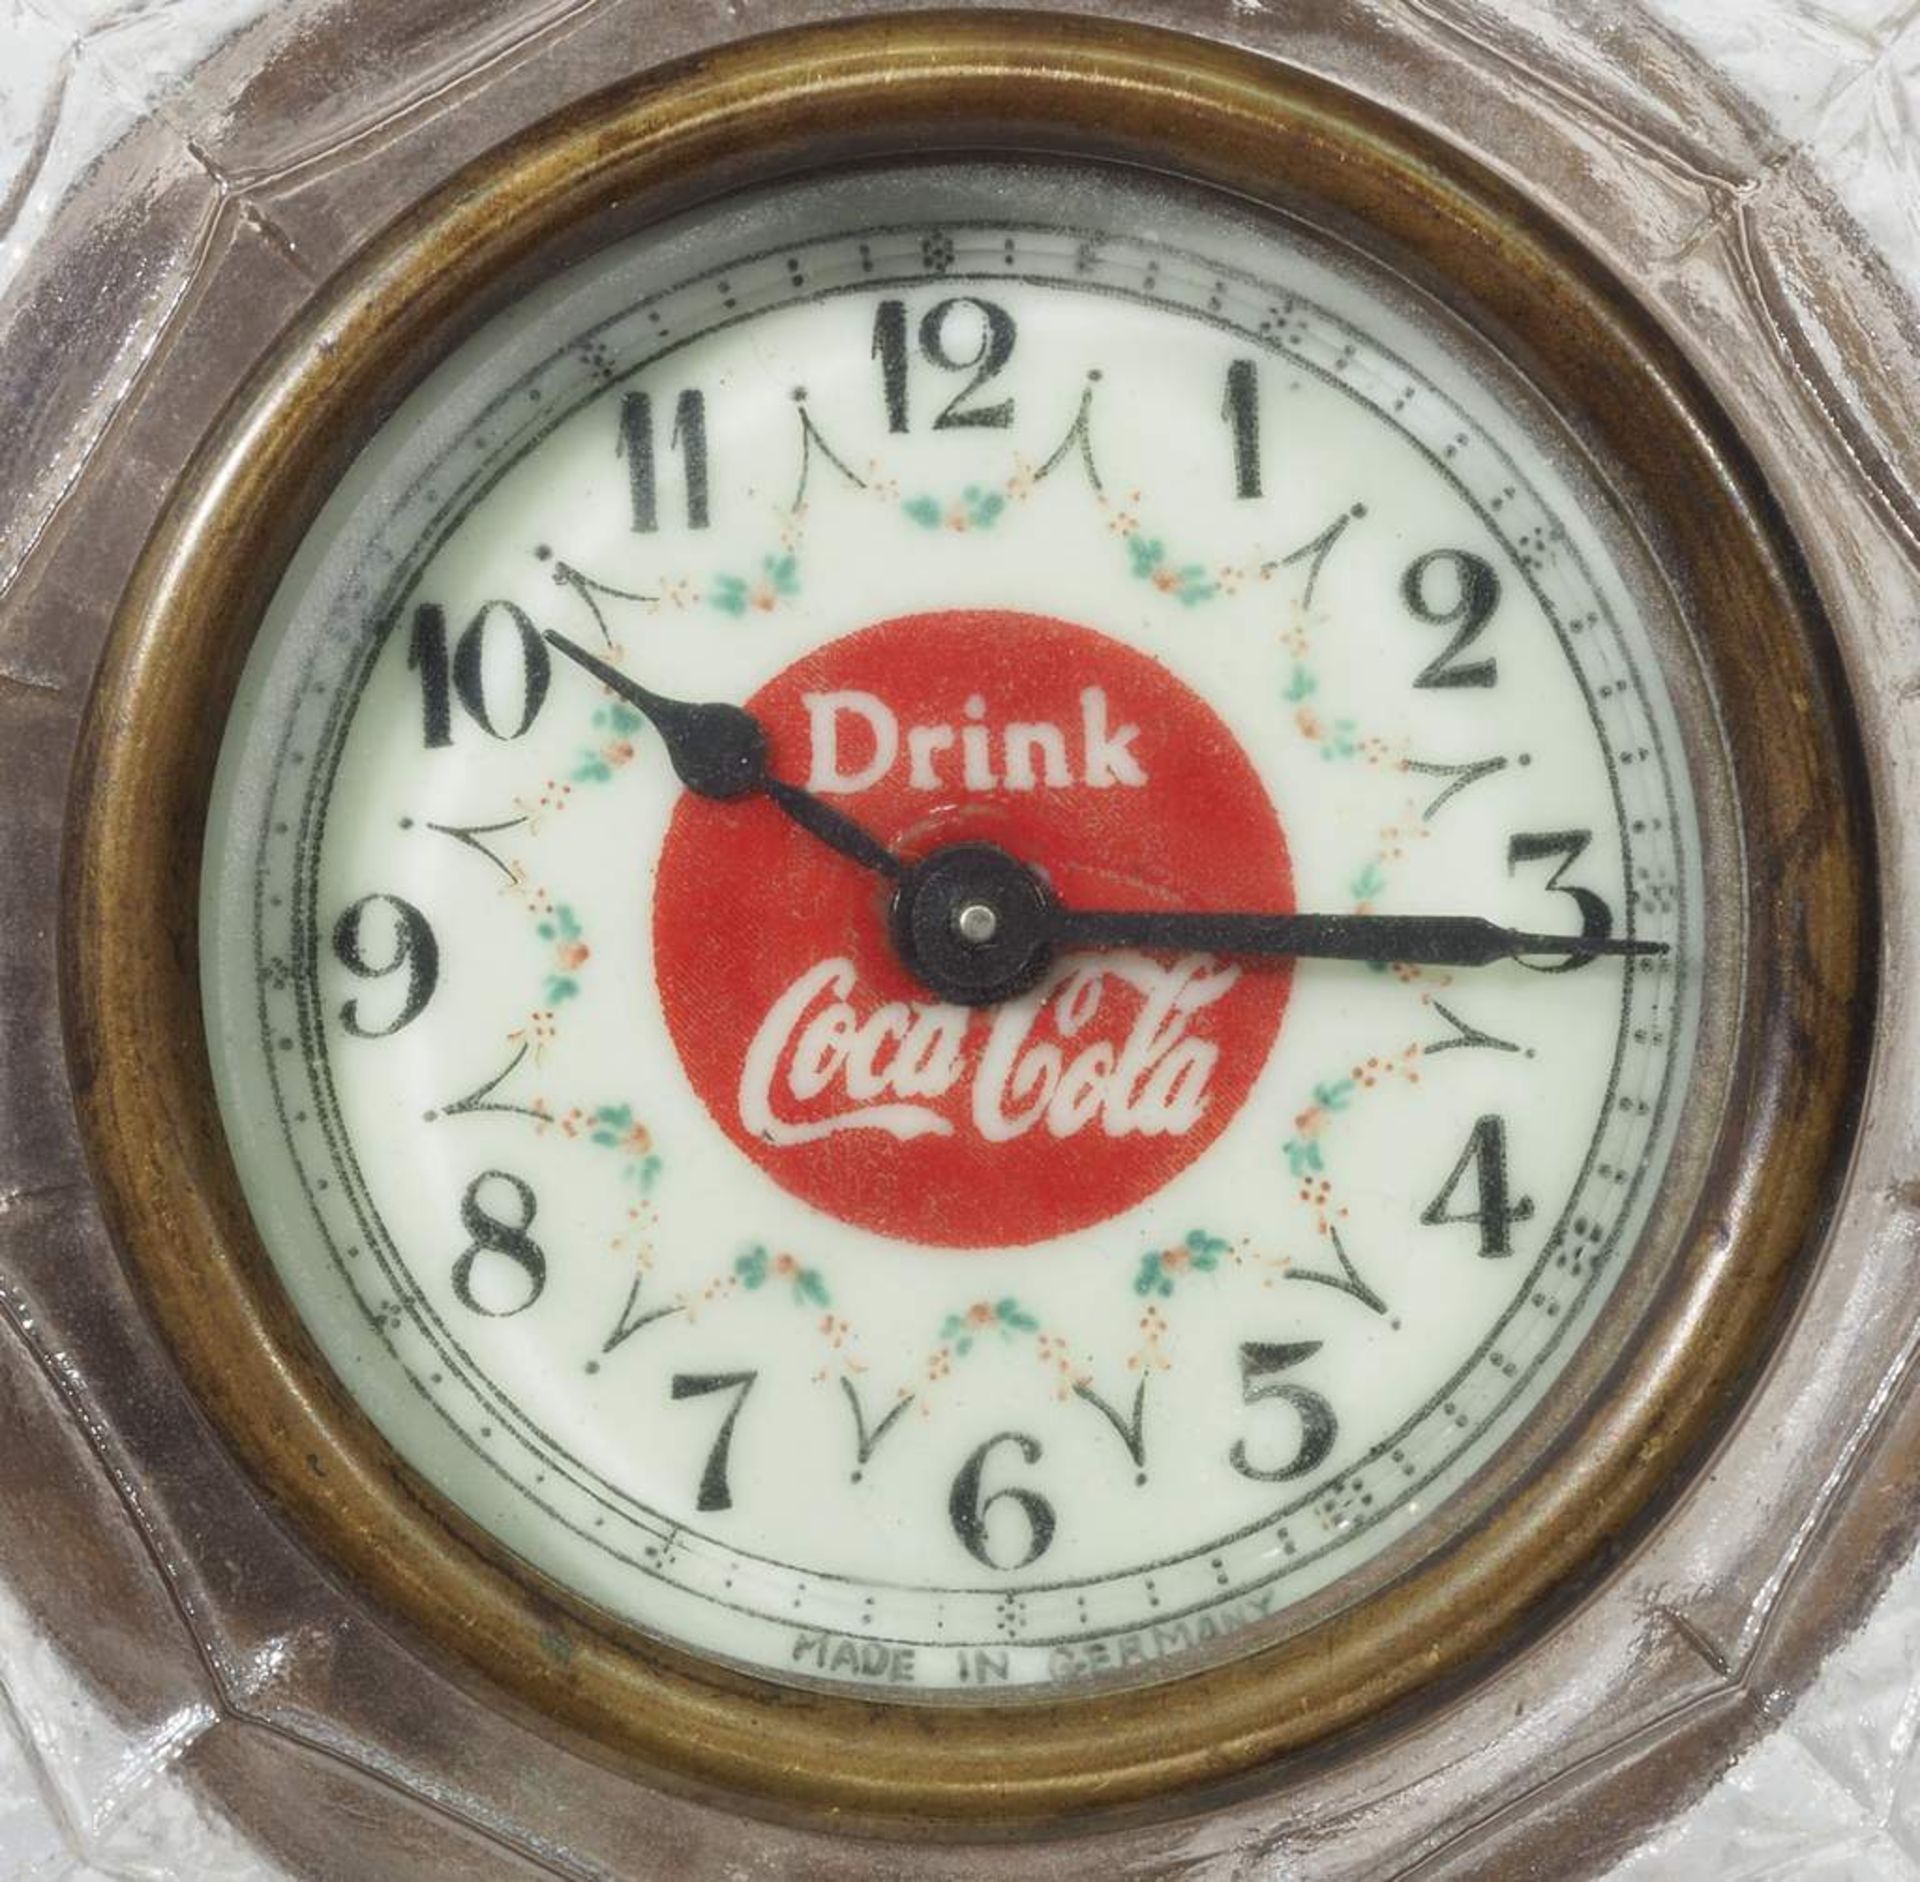 Regenschirm-Uhr um 1900, Werbung für Coca Cola. - Image 6 of 6